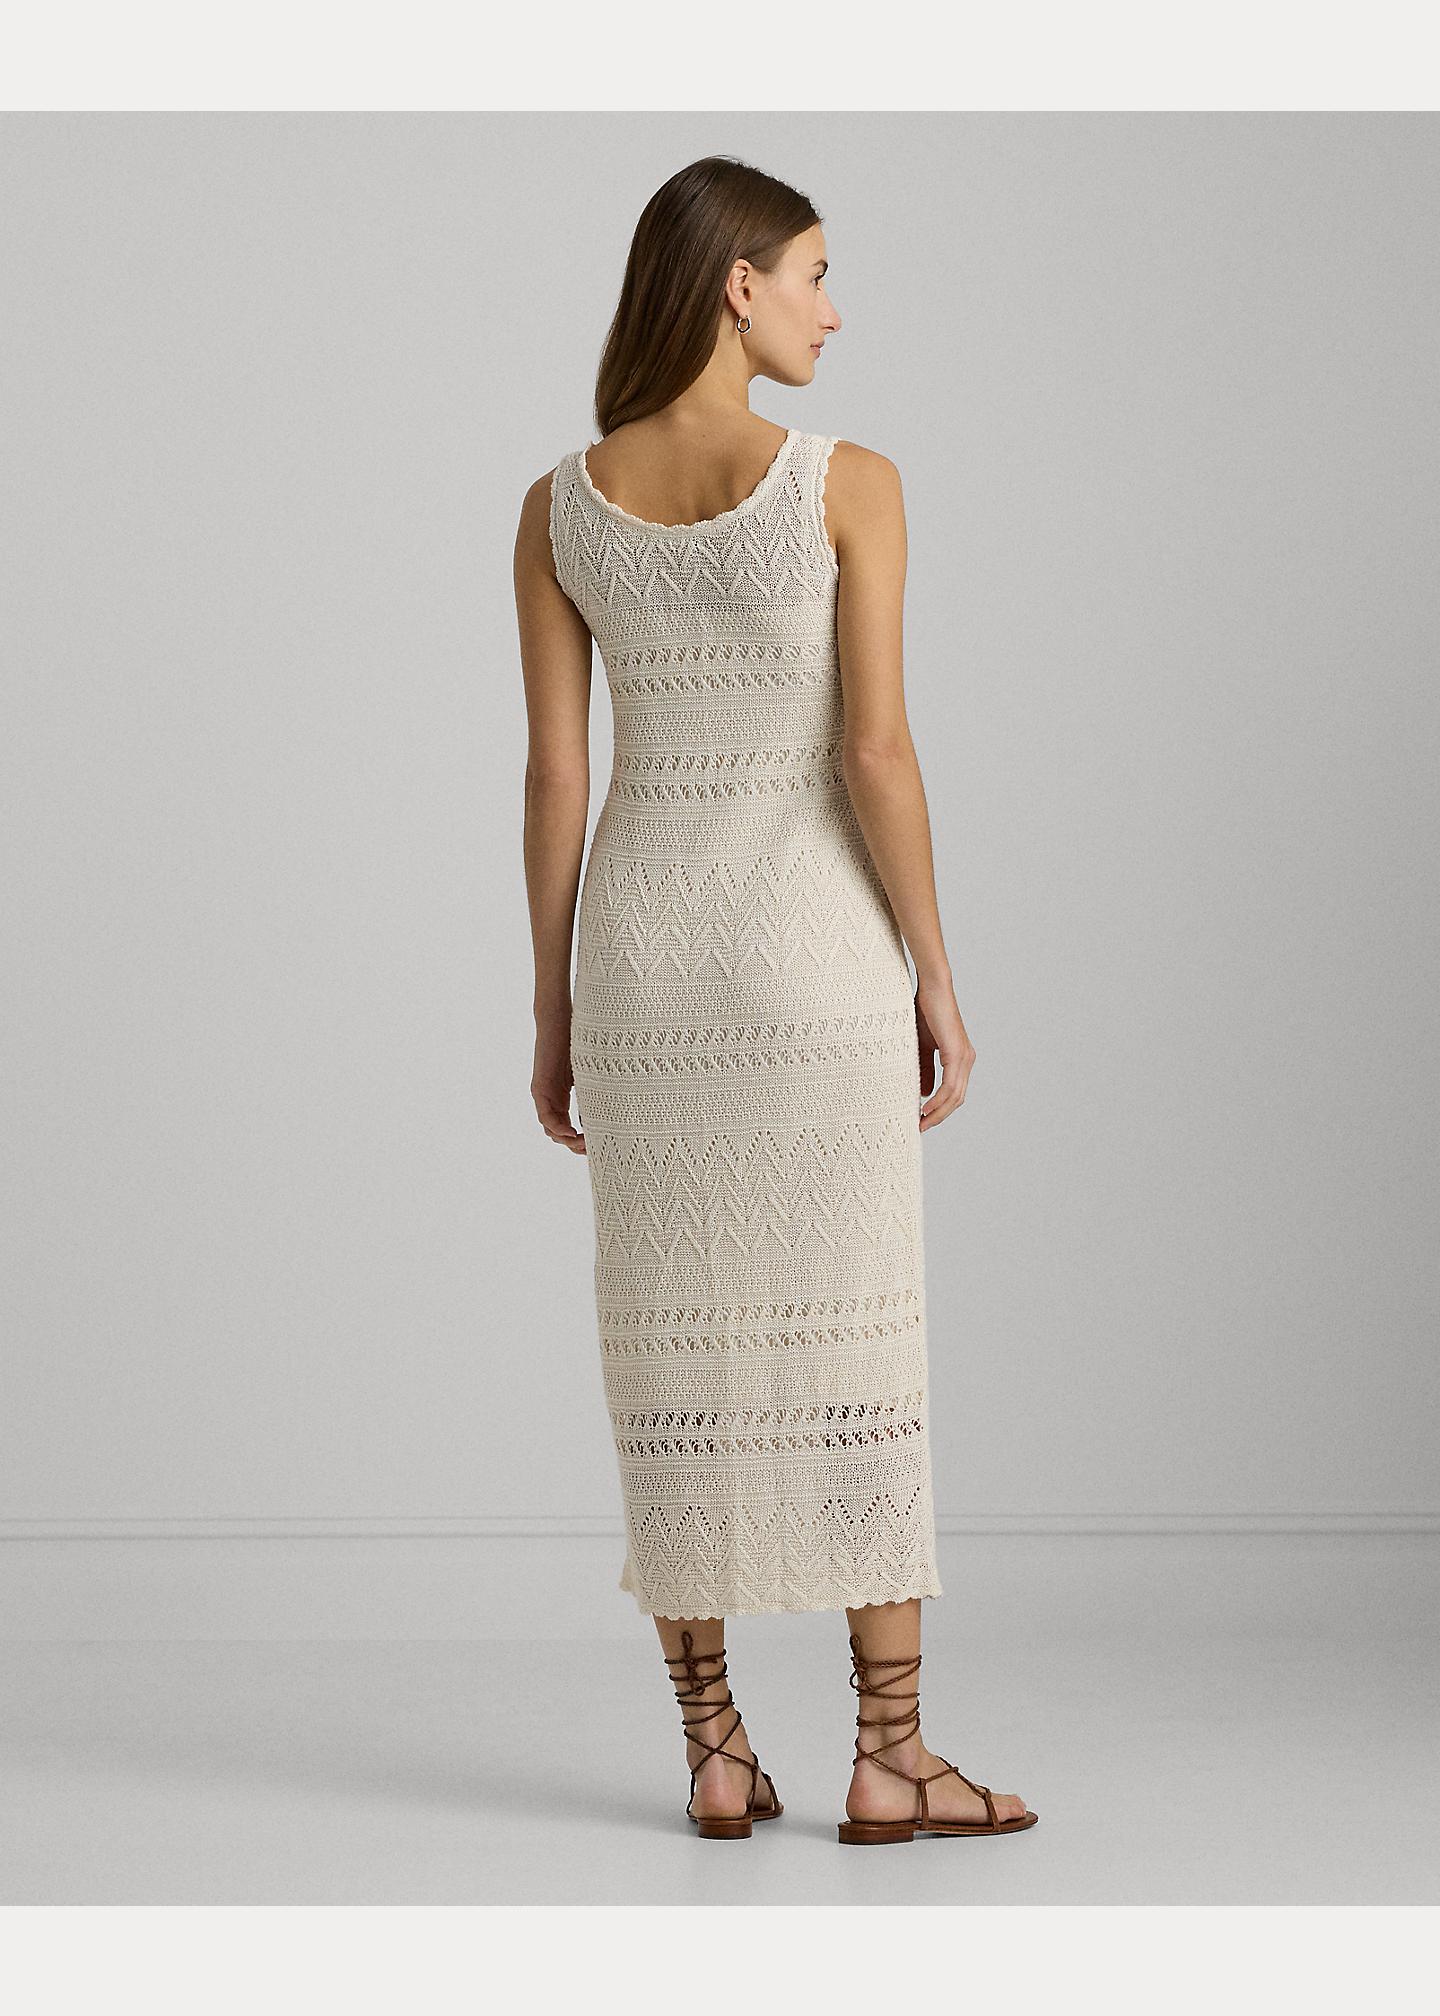 Ralph Lauren Pointelle-knit Linen Sleeveless Dress in White | Lyst UK